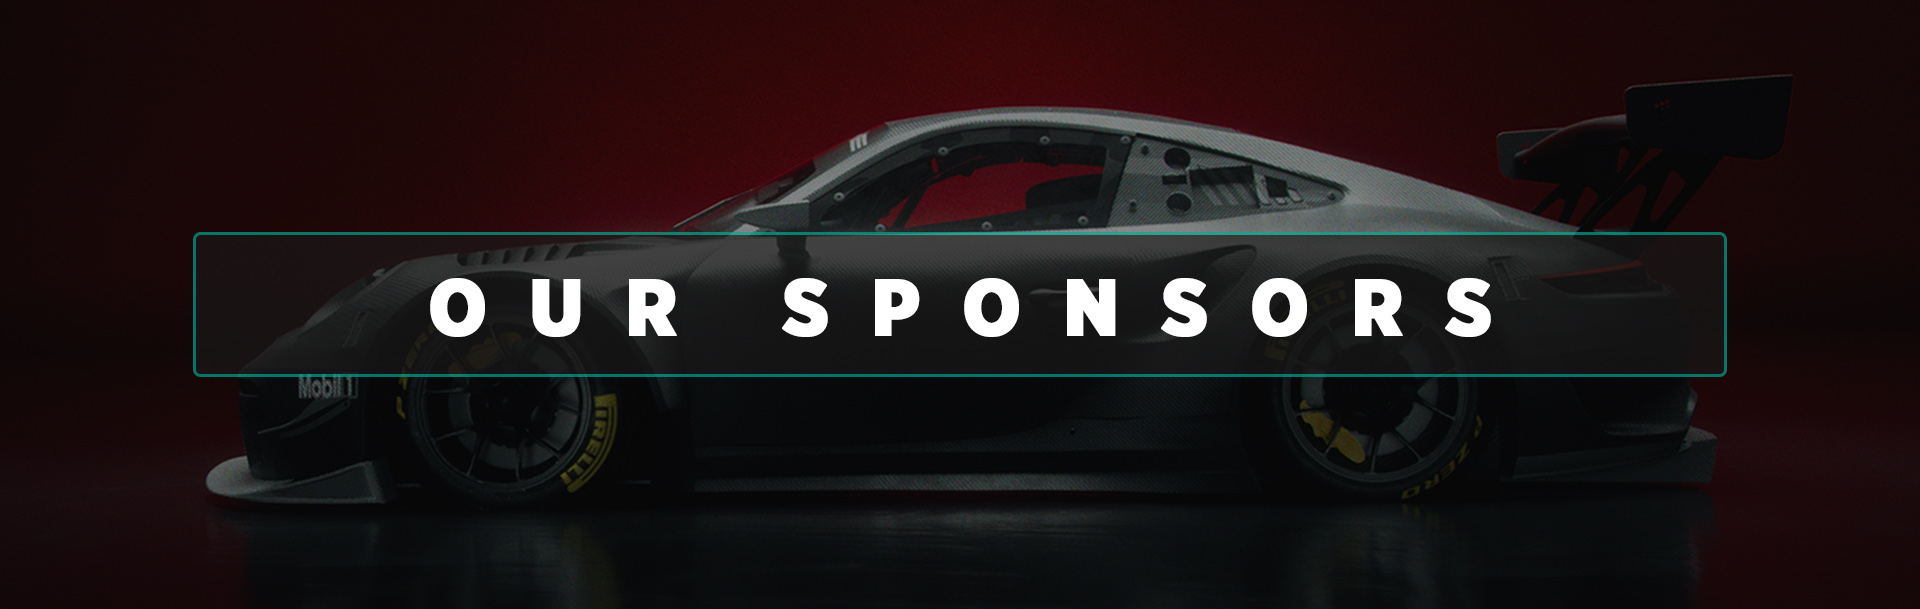 sponsors header